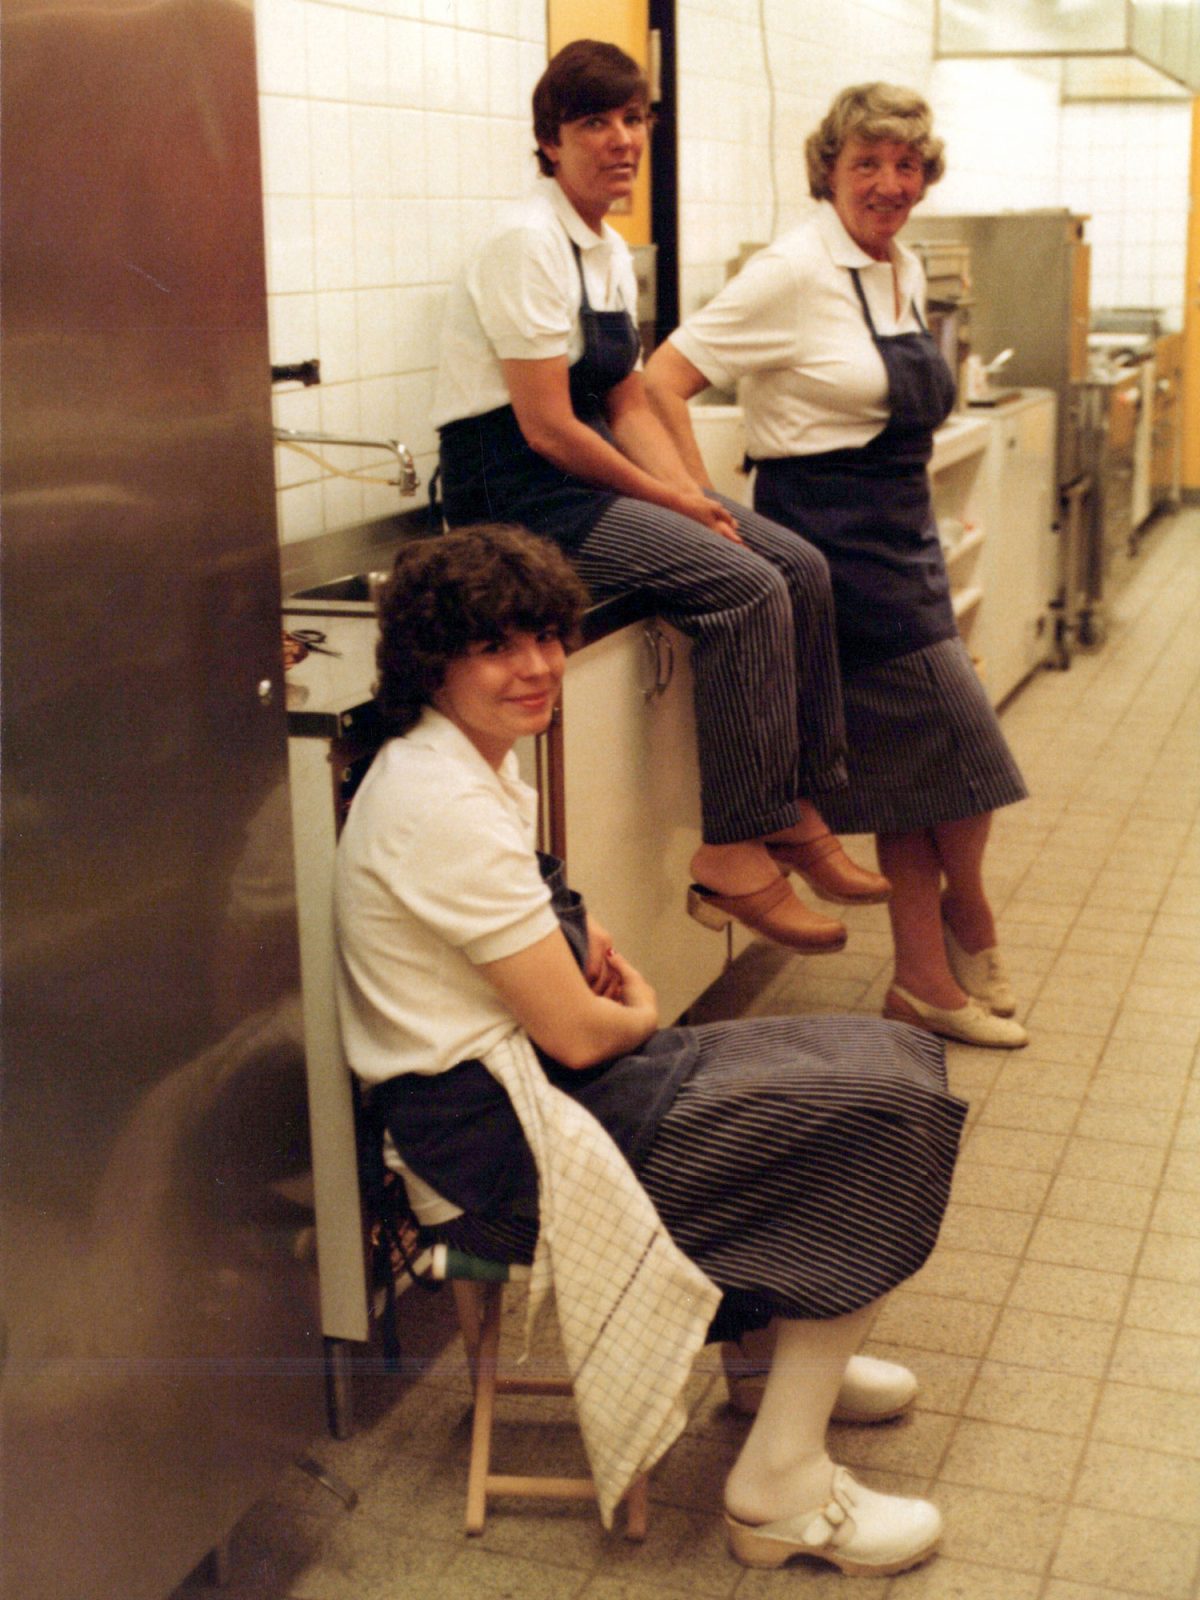 Drei lächelnde Frauen in einer Industrieküche, weiß gekleidet mit blauen Schürzen.